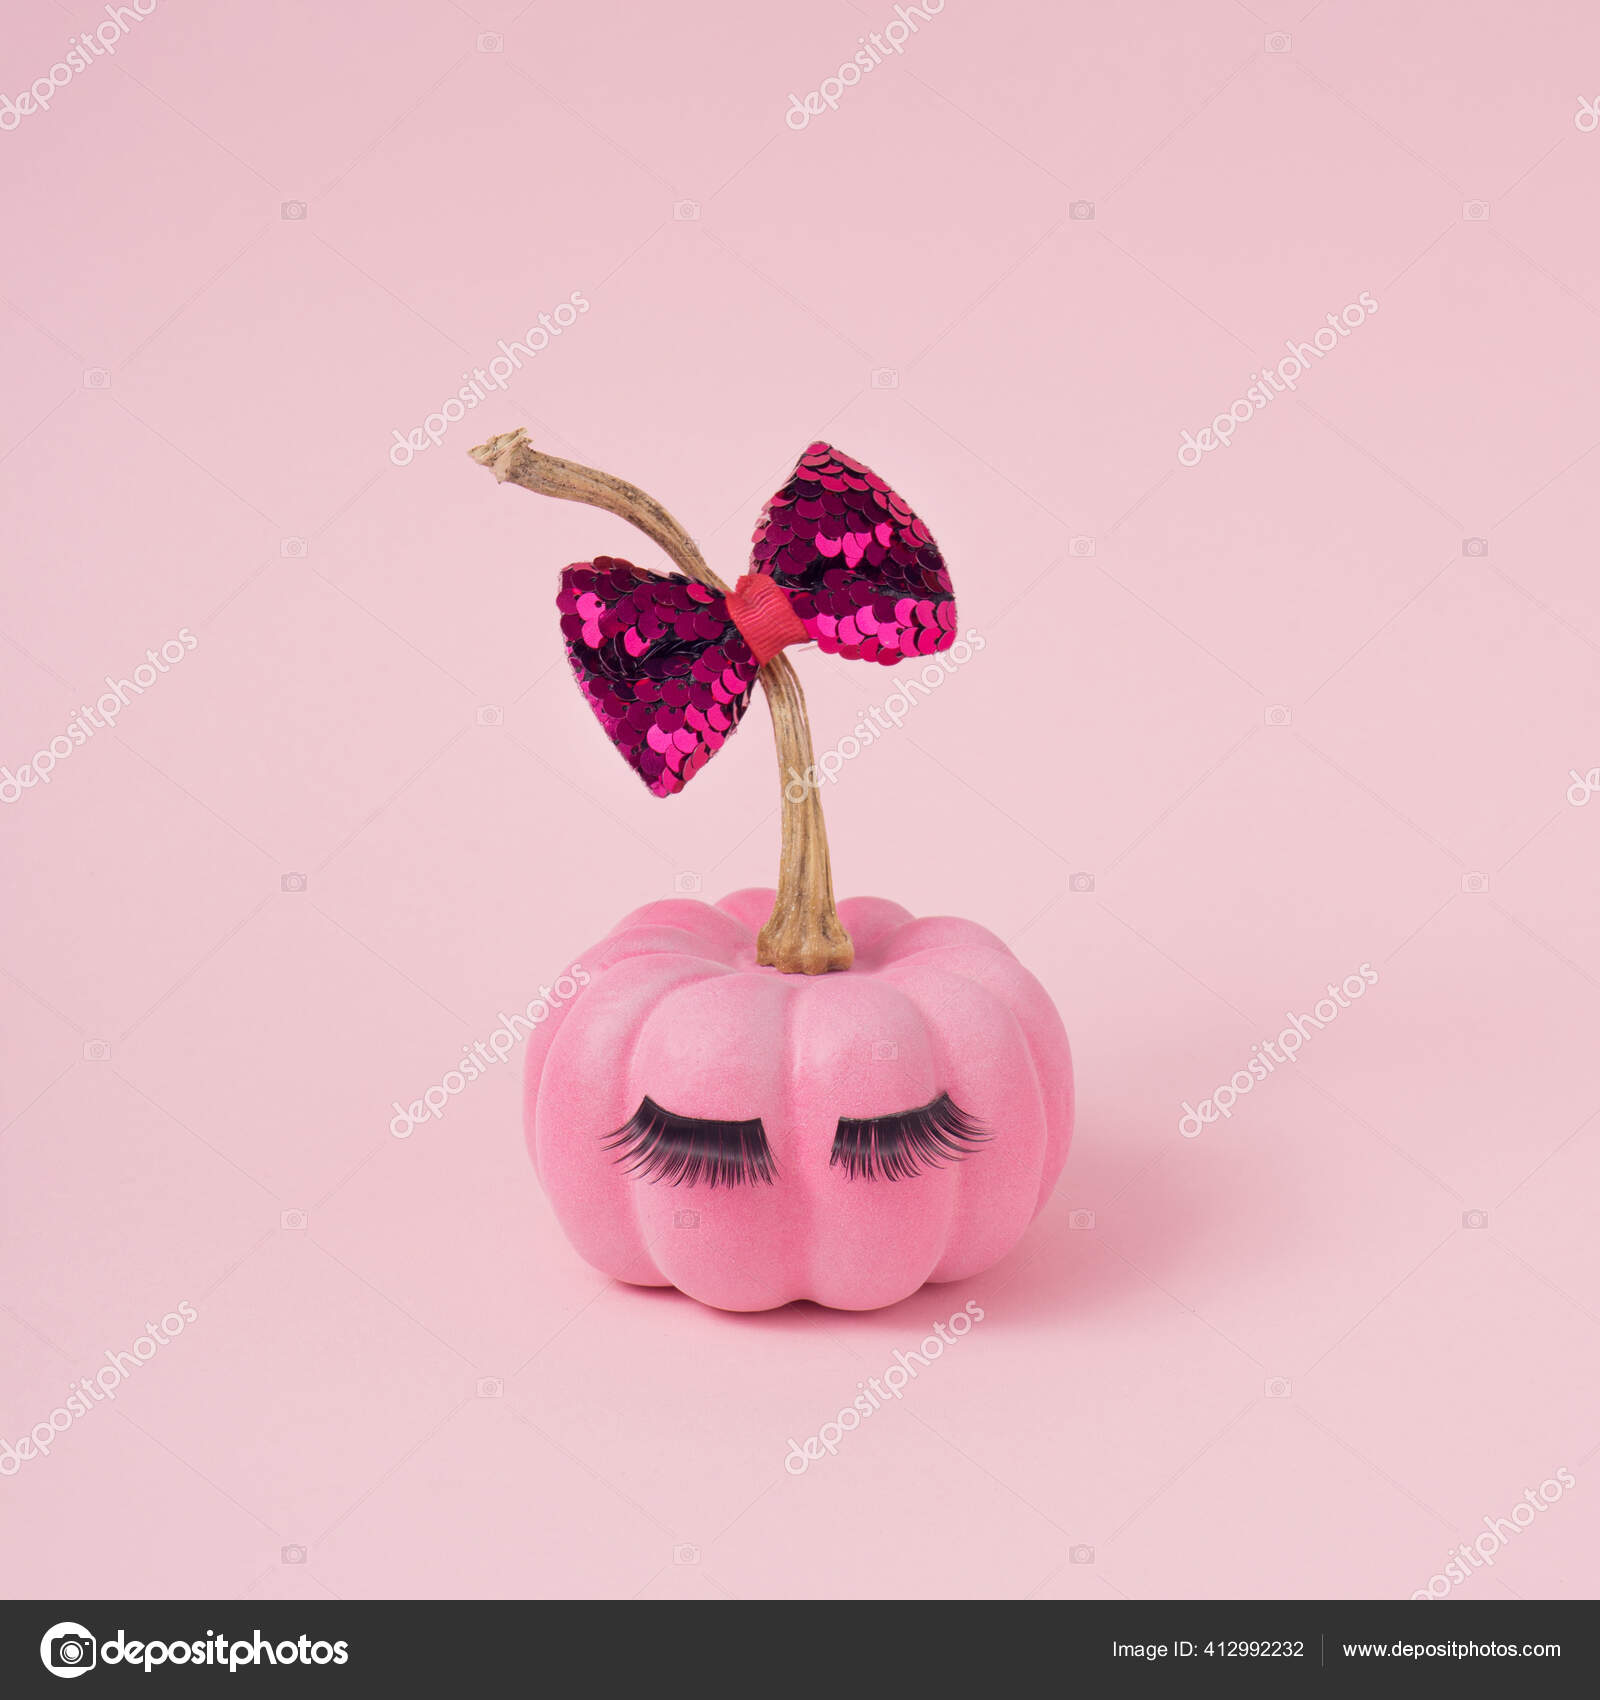 Bạn muốn tự tay tạo ra những chiếc bí ngô độc đáo cho mùa lễ Halloween? Đừng bỏ lỡ cơ hội xem các Pumpkin Make đơn giản và dễ thực hiện nhất, giúp bạn tự tay tạo nên những chiếc bí ngô khác nhau, độc đáo và đậm chất Halloween.